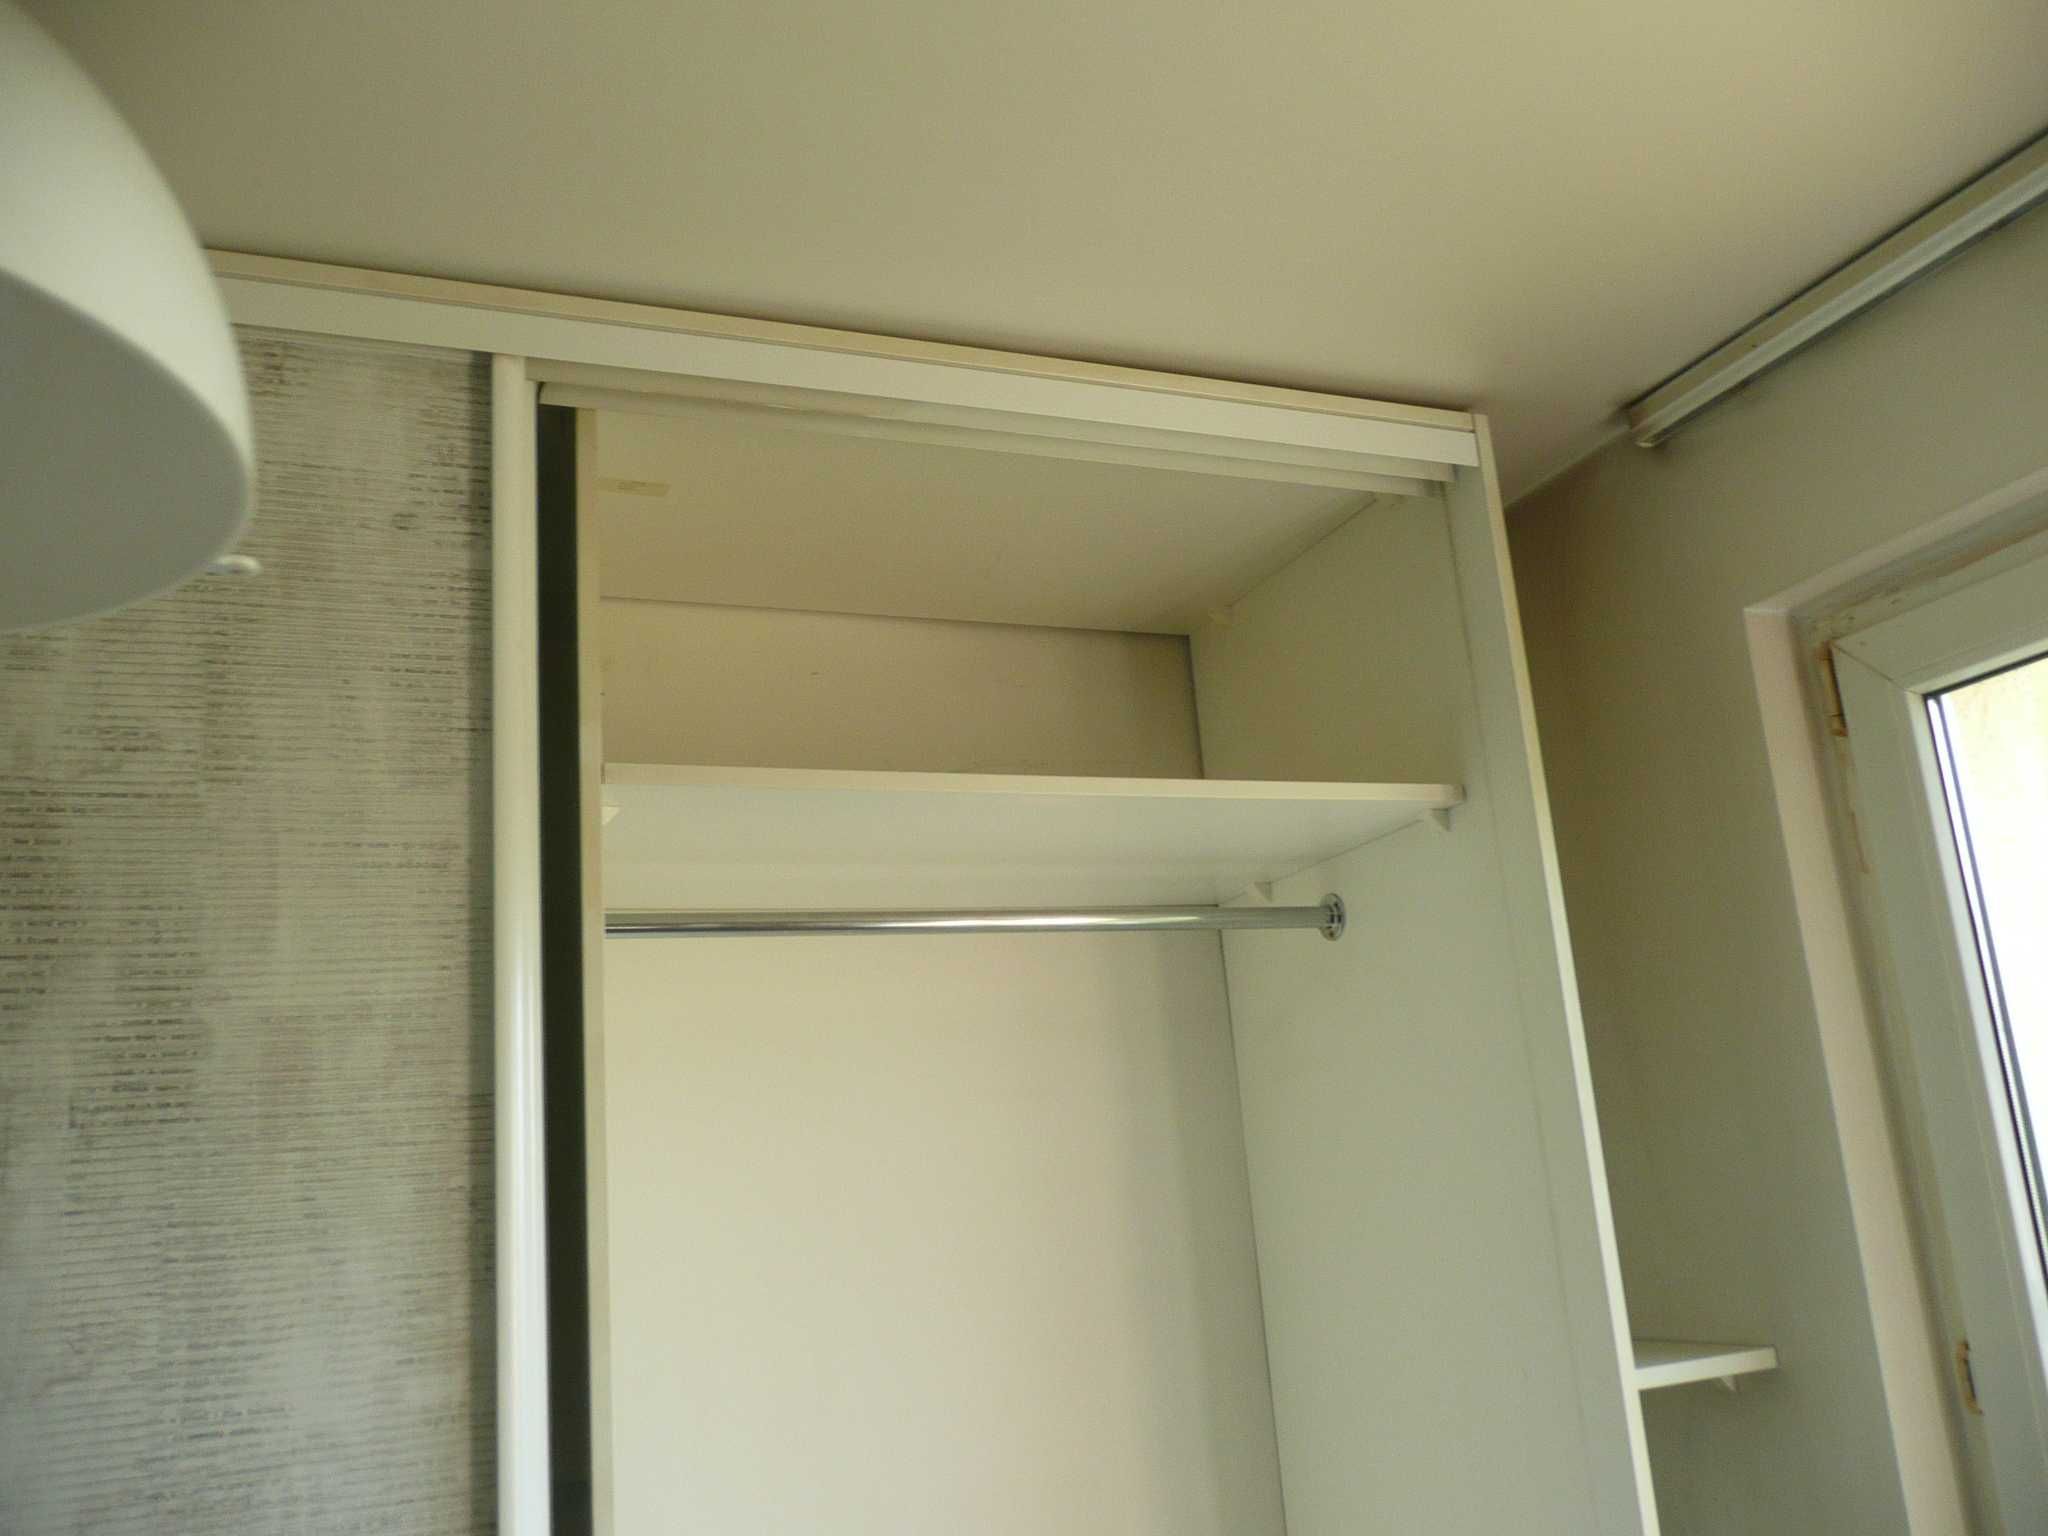 SZAFA 200x240 cm - Drzwi PRZESUWNE Profile HETTICH szuflady BLUM DOWÓZ